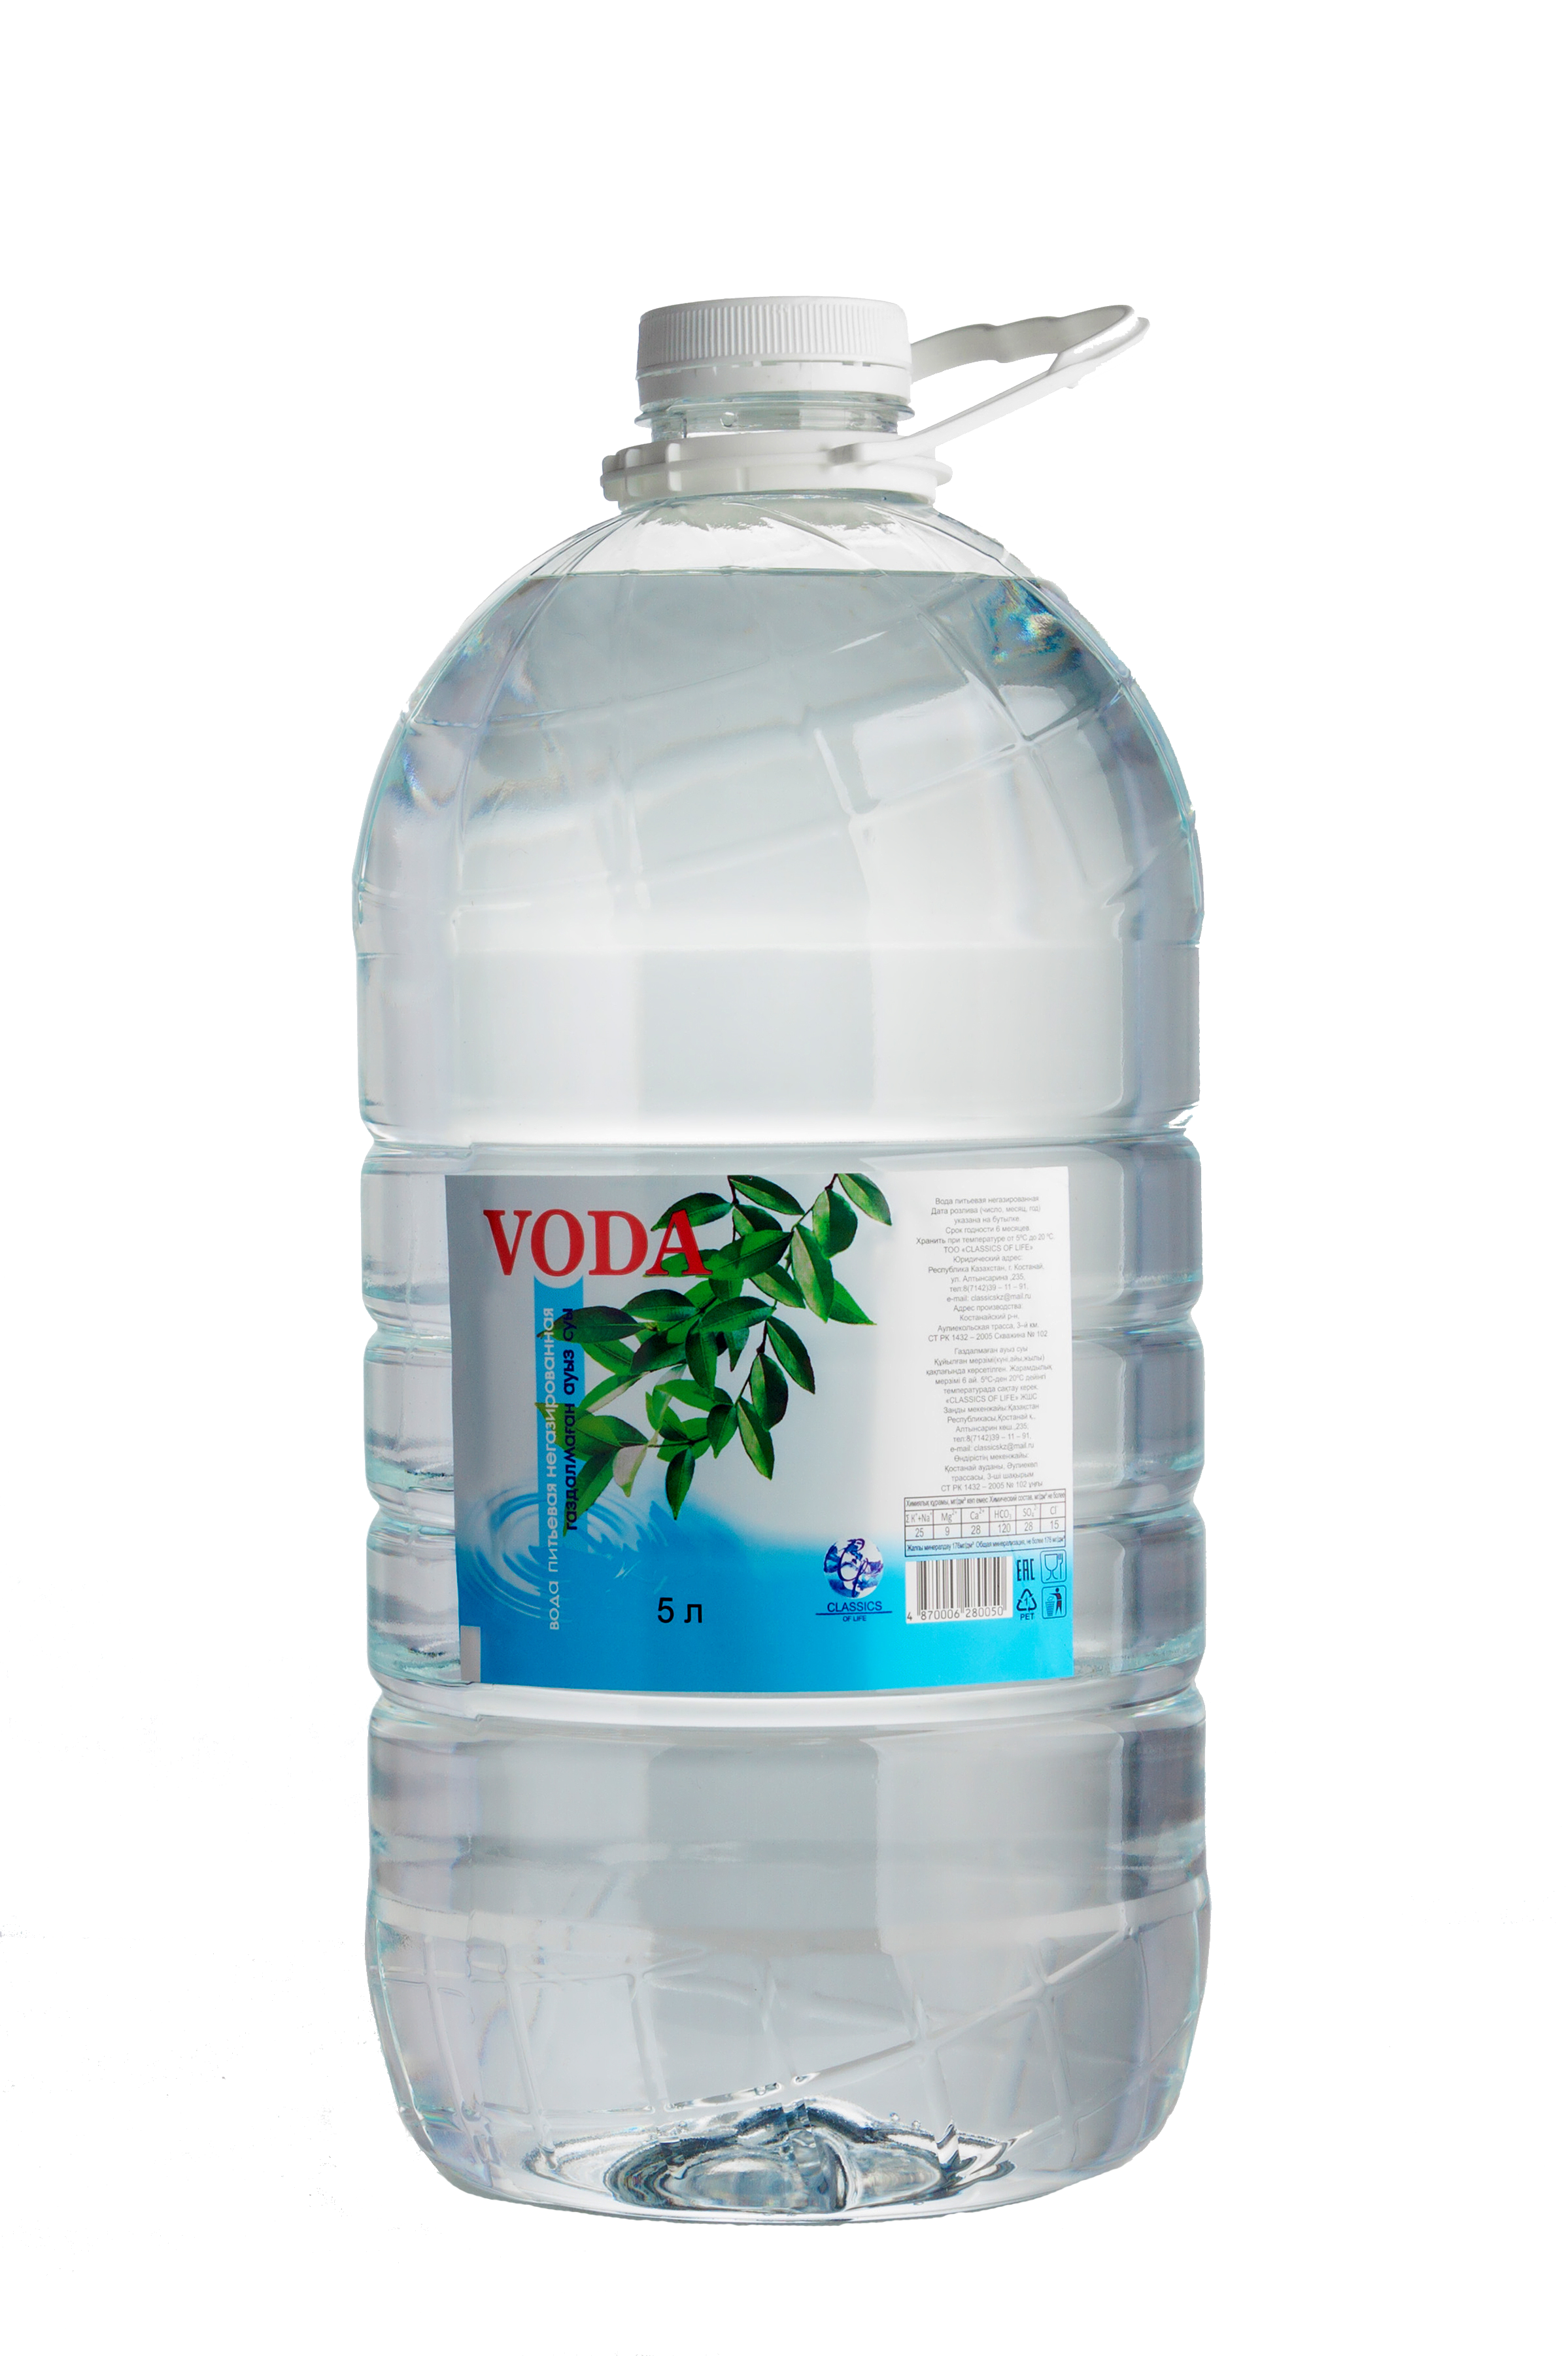 Вода питьевая “Voda” - 5,0л